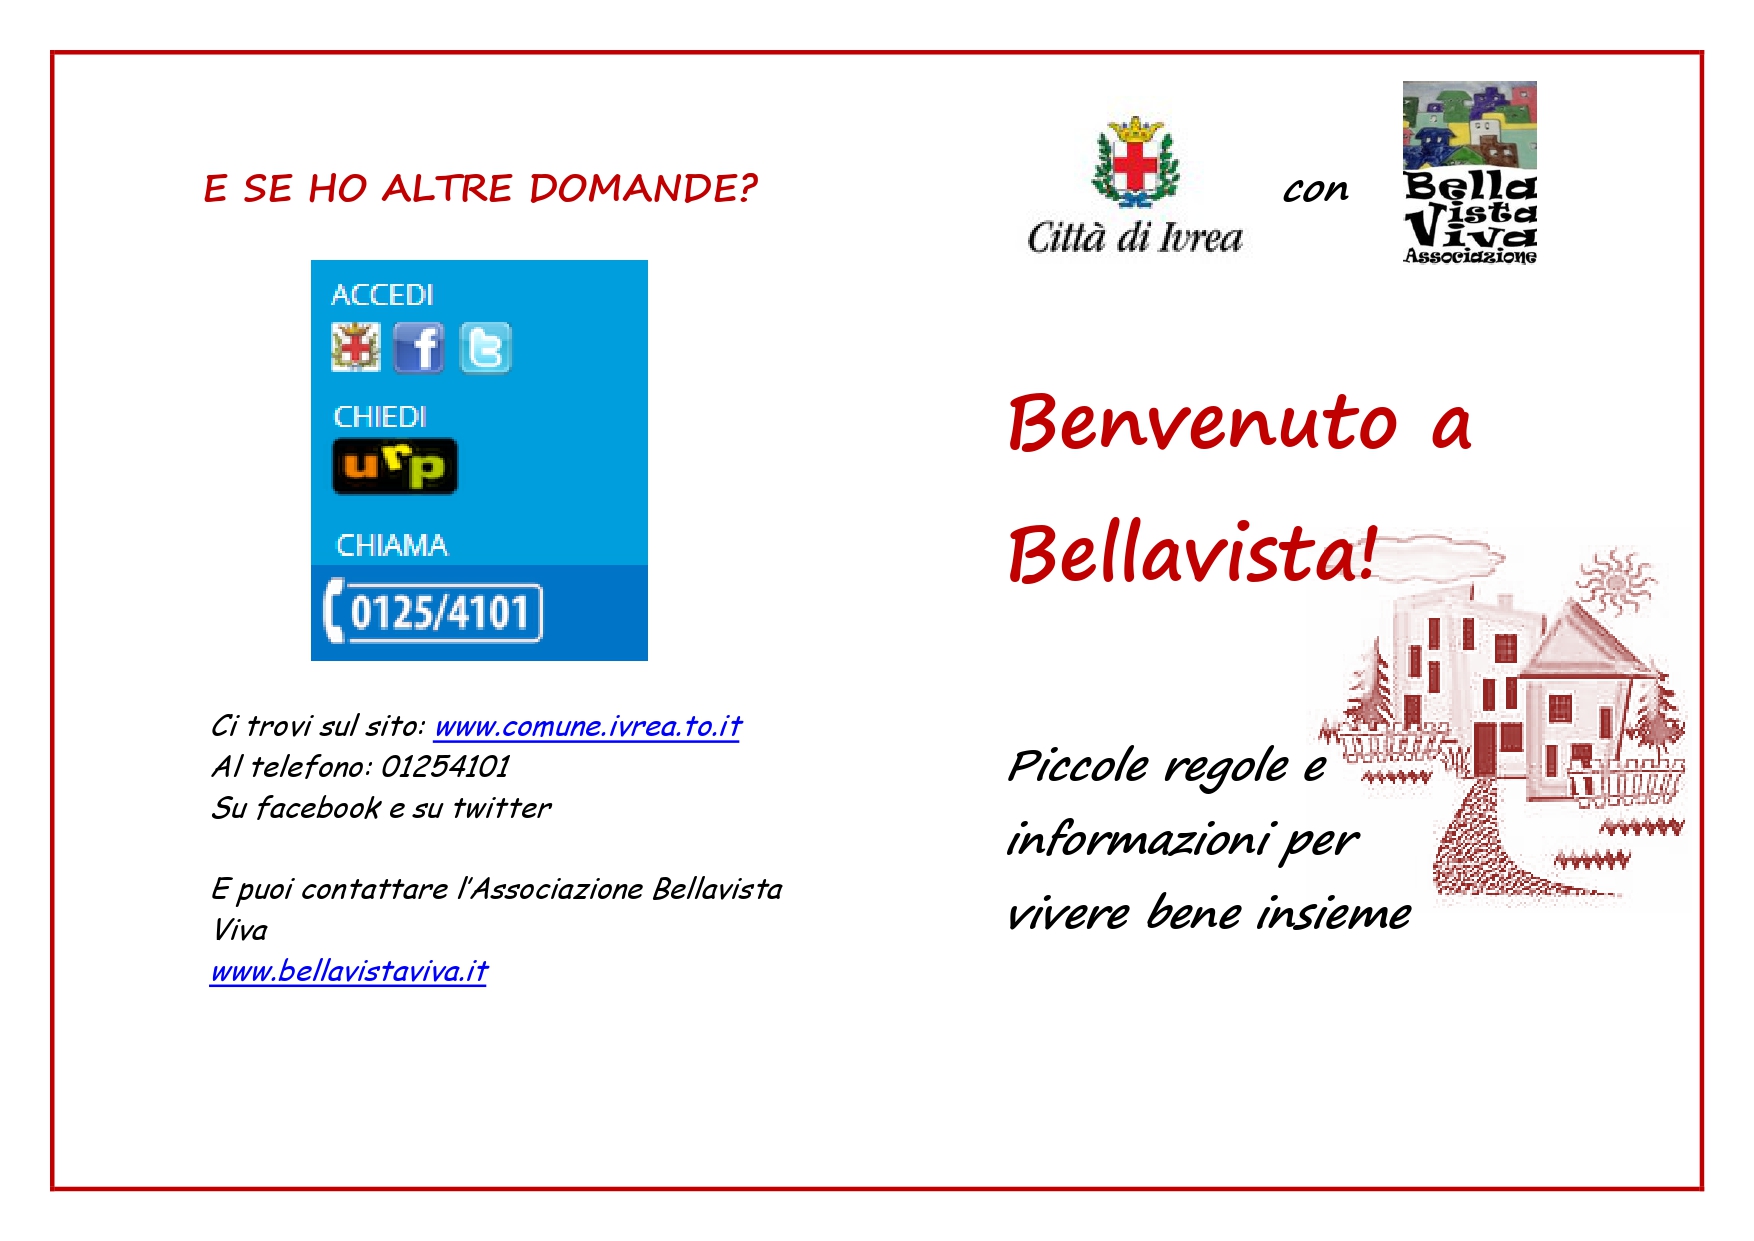 Benvenuto a Bellavista pages to jpg 0001